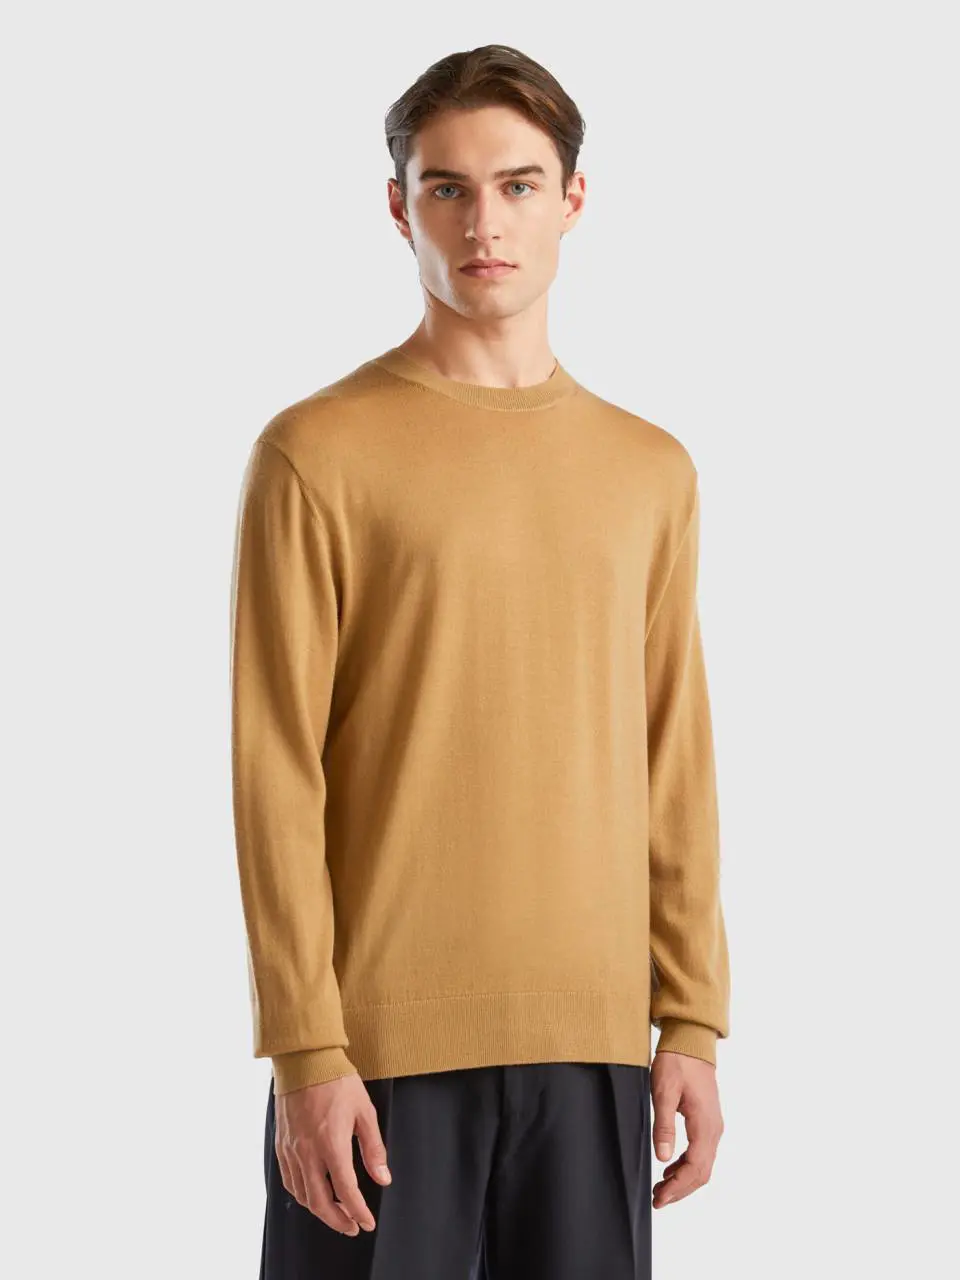 Benetton beige sweater in pure merino wool. 1